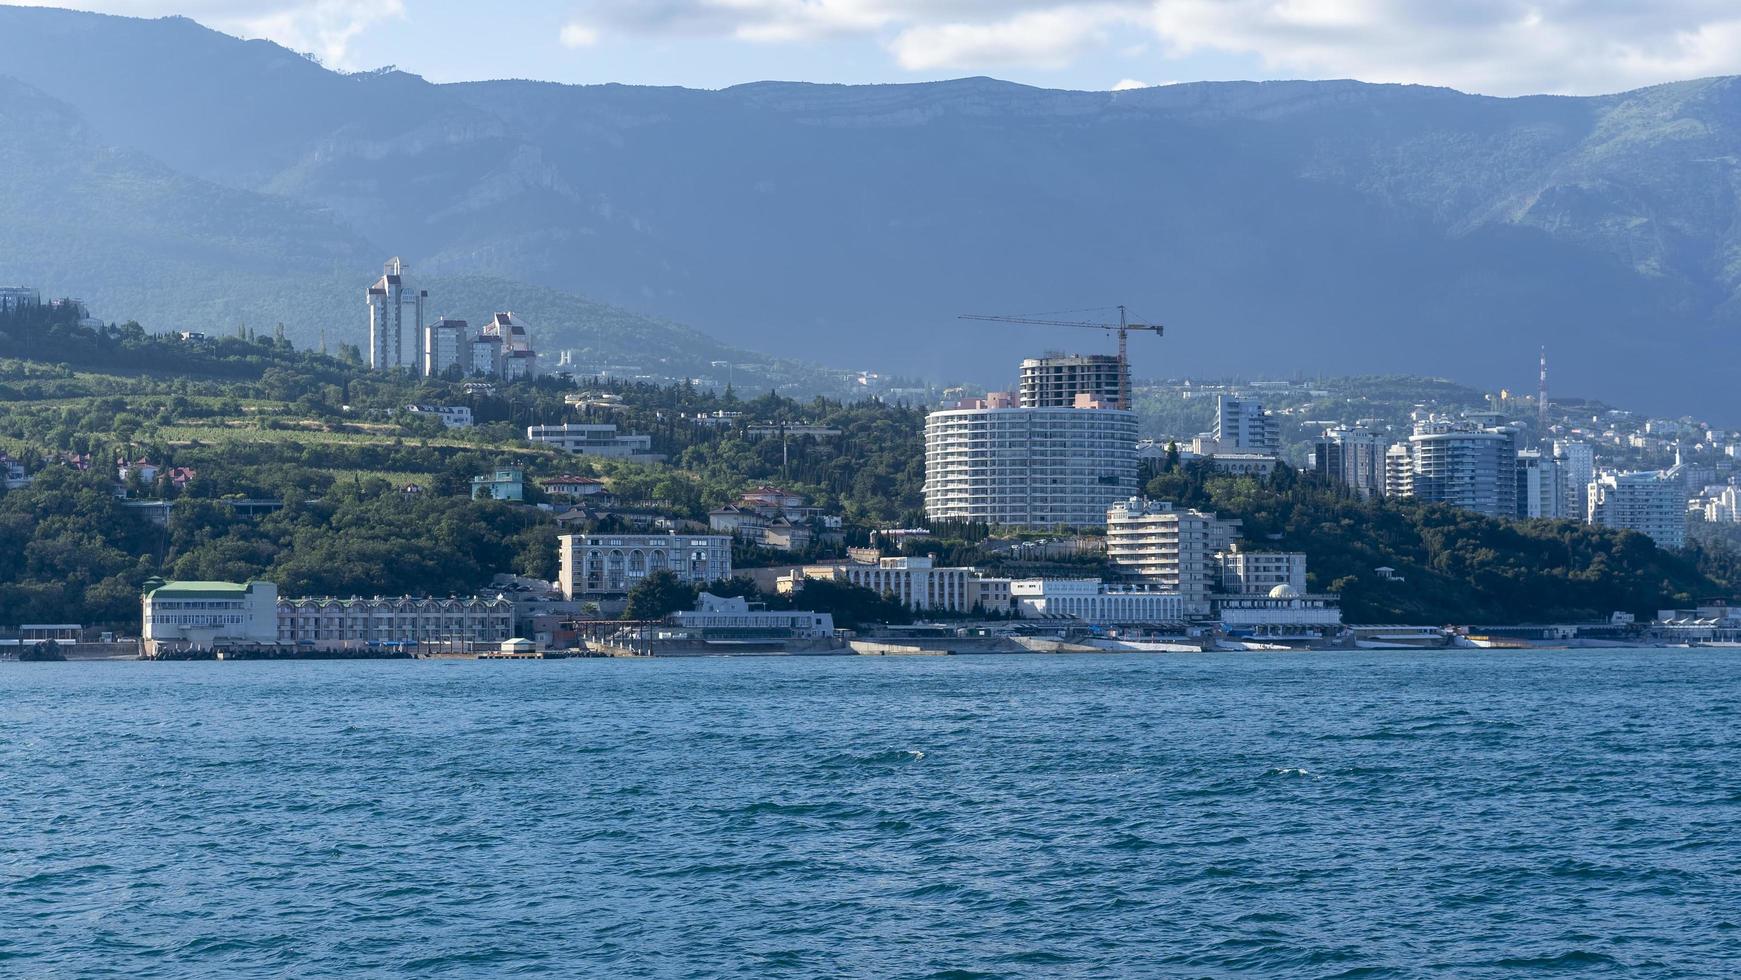 Meereslandschaft mit Blick auf die Küste von Jalta foto